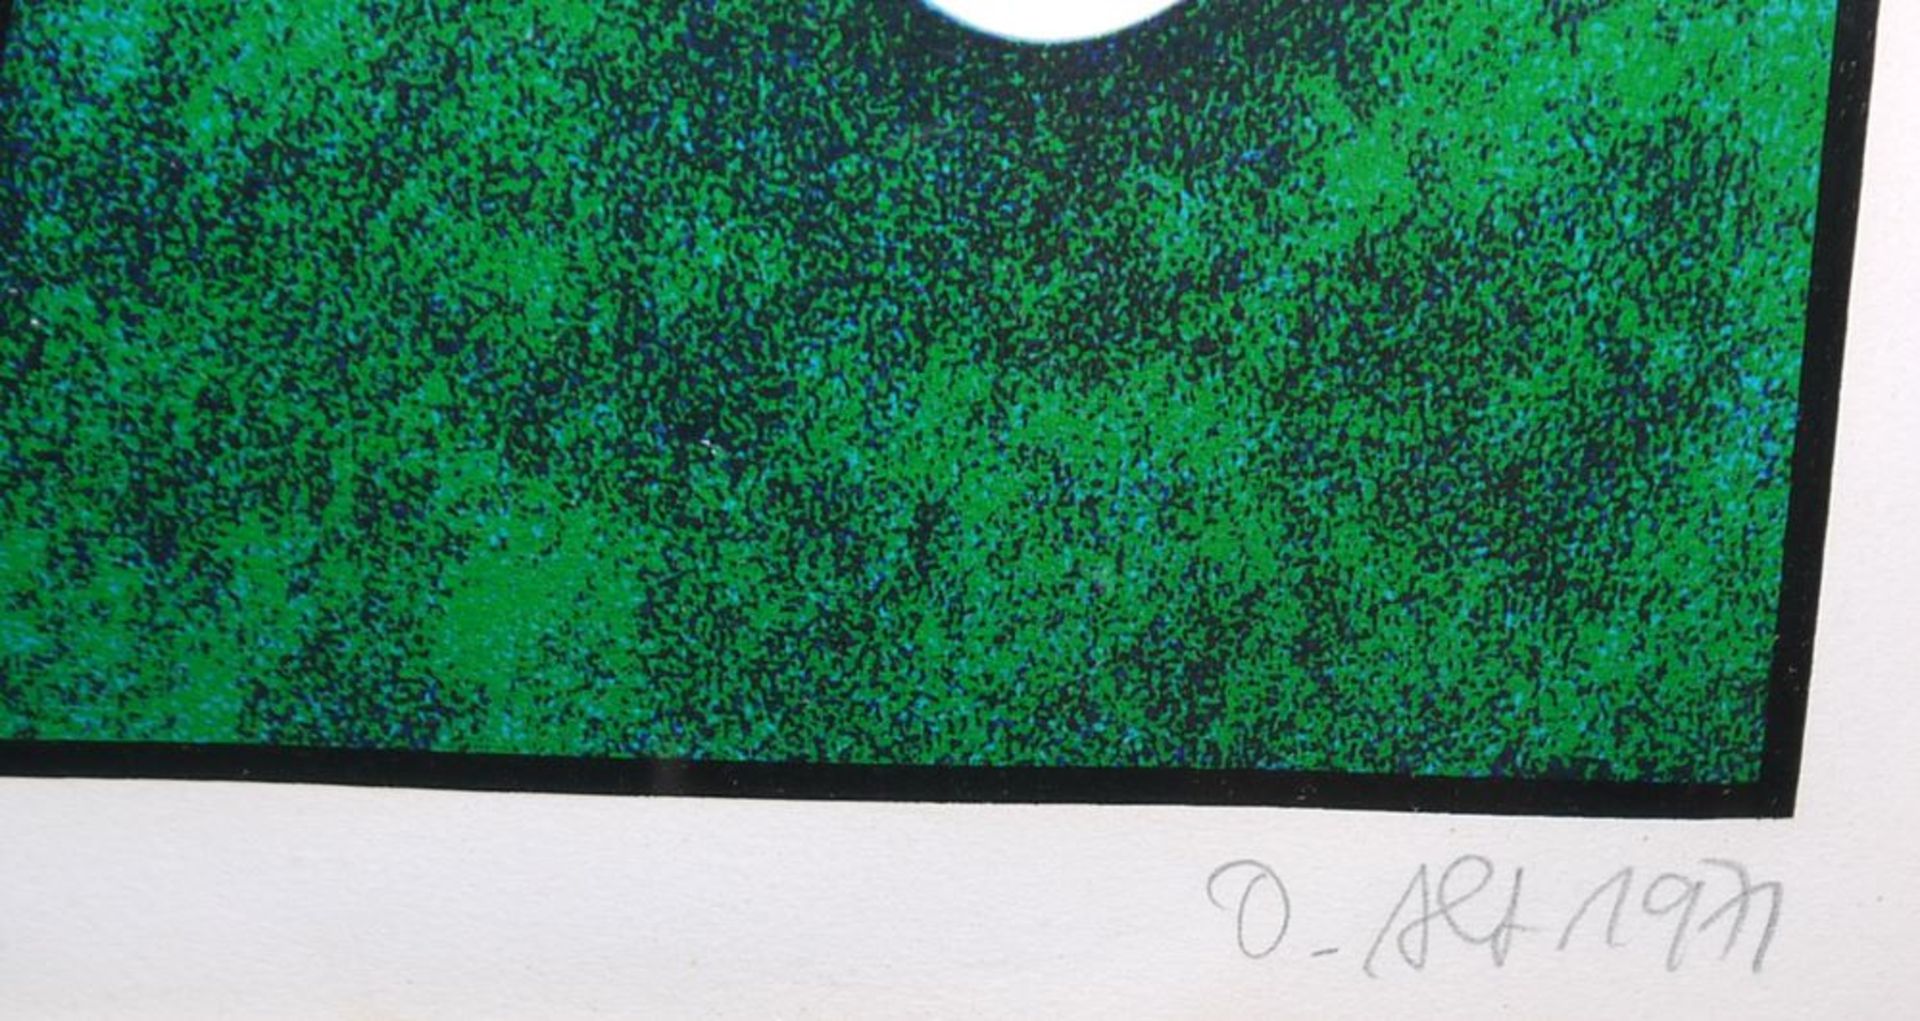 Otmar Alt, Abstrakte Komposition, signierte Farbserigraphie von 1971, in edler Galerierahmung - Image 2 of 2